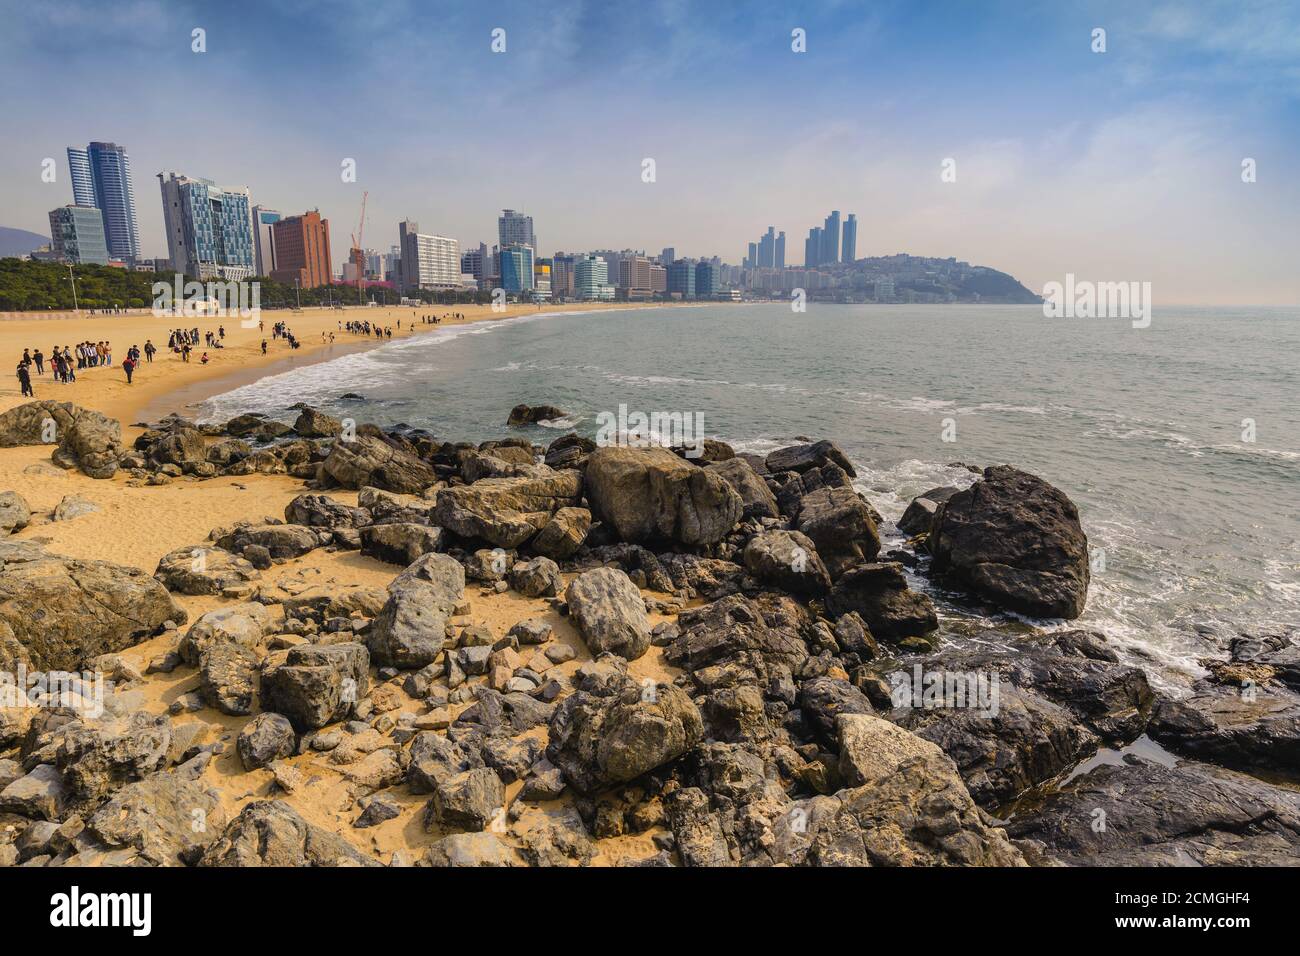 Haeundae beach and Busan city skyline, Busan, South Korea Stock Photo